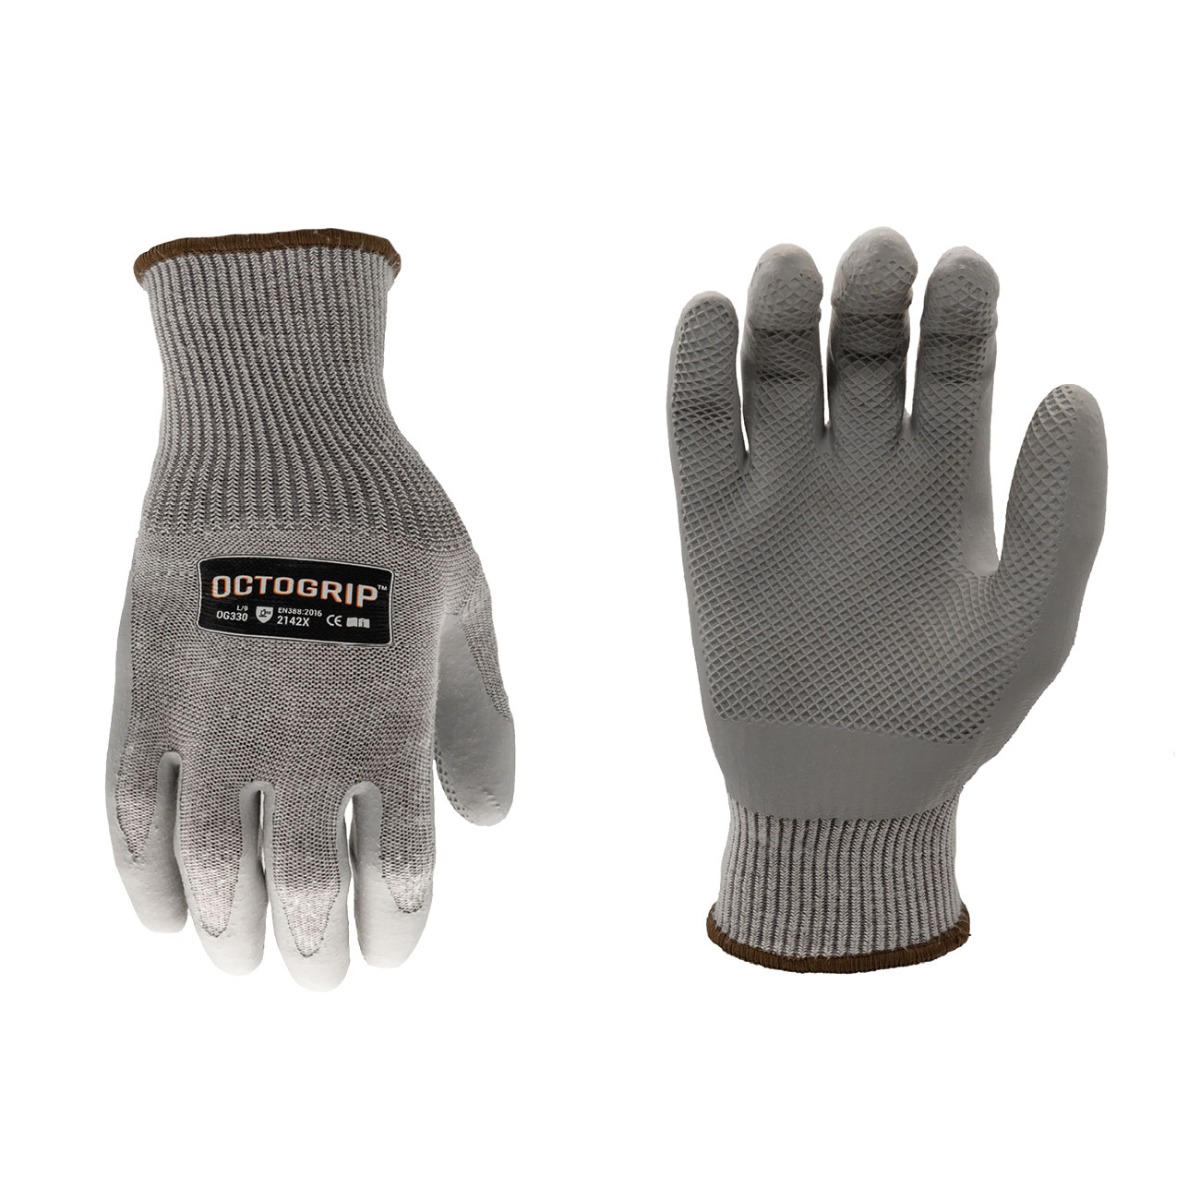 Heavy Duty Series Octogrip Grip Glove 13g - Size XL